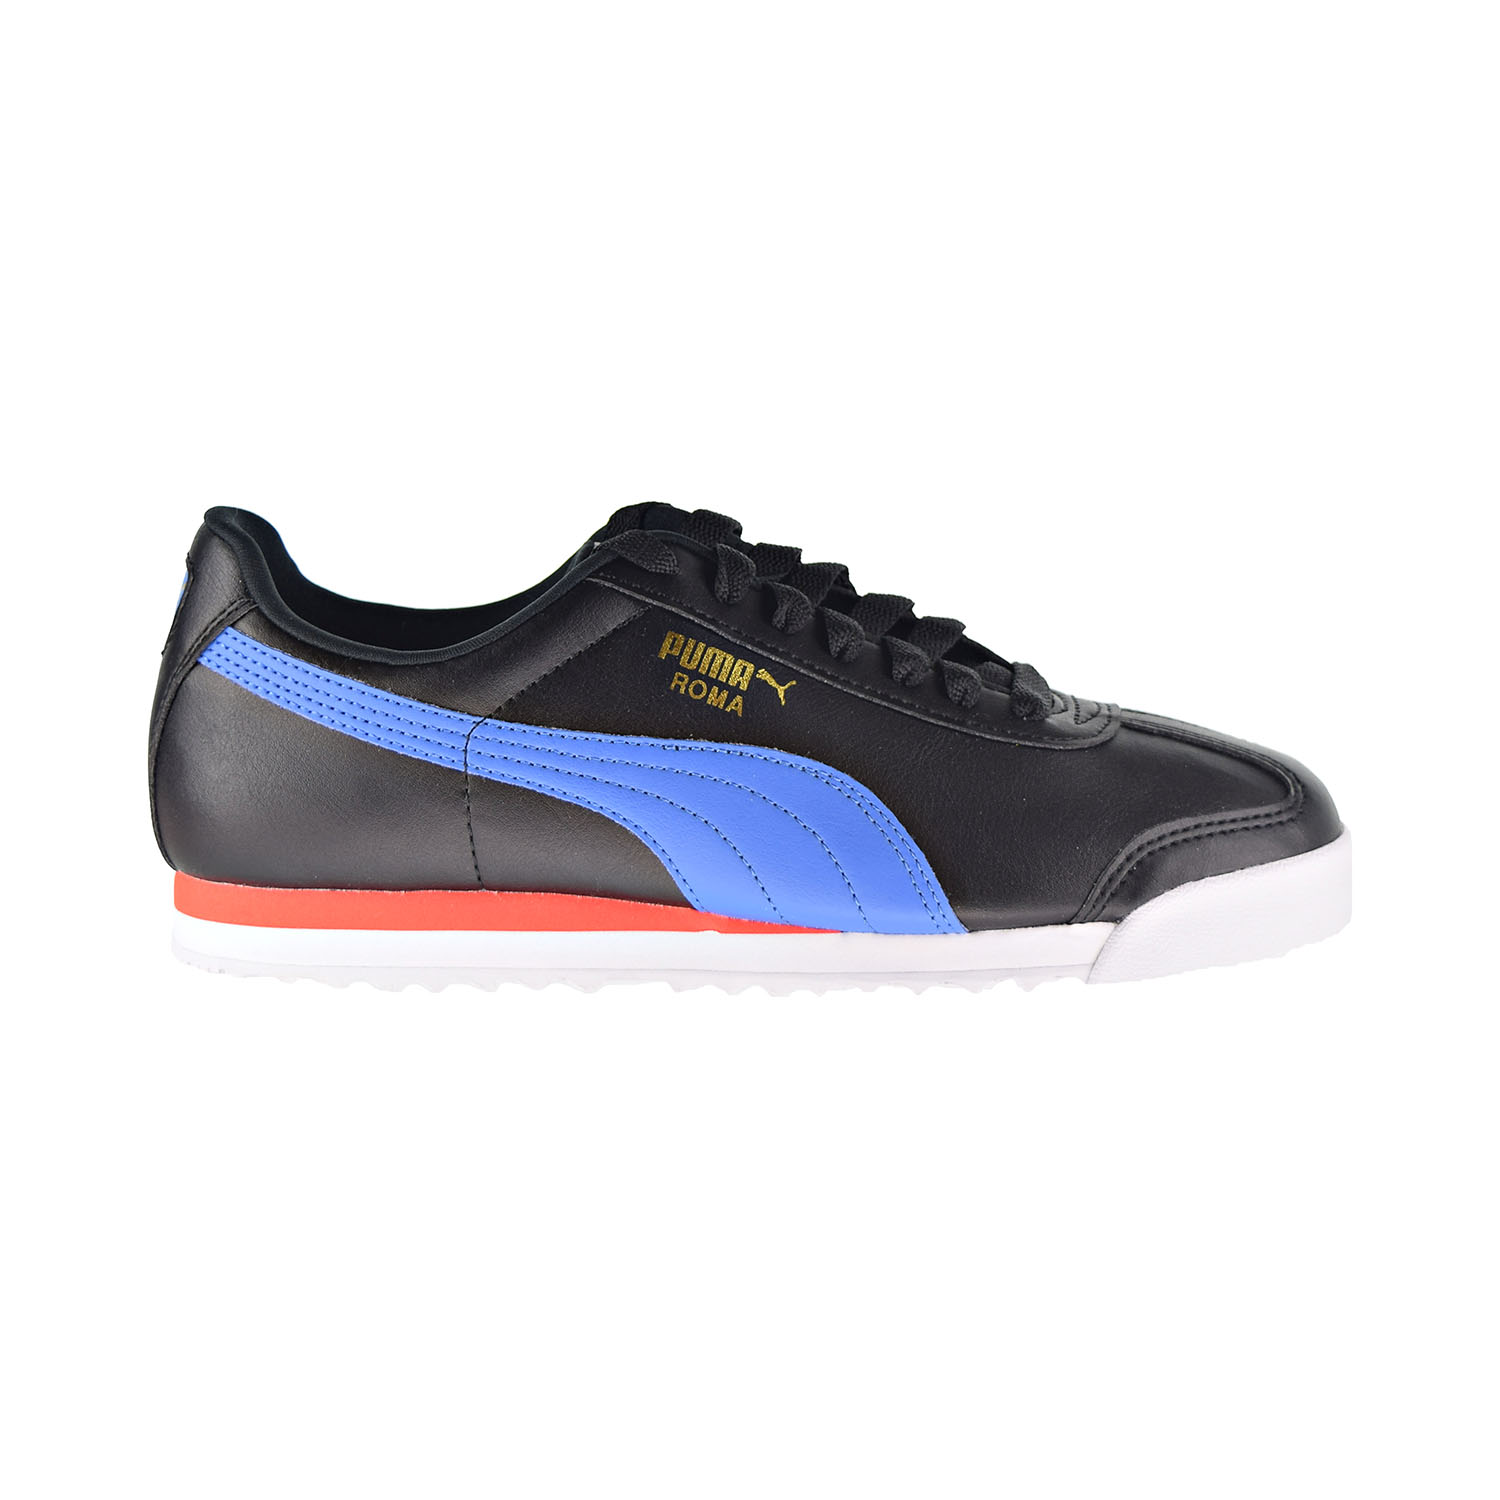 Puma Roma Basic+ Men's Shoes Puma Black-Palace Blue 369571-10 - image 1 of 6